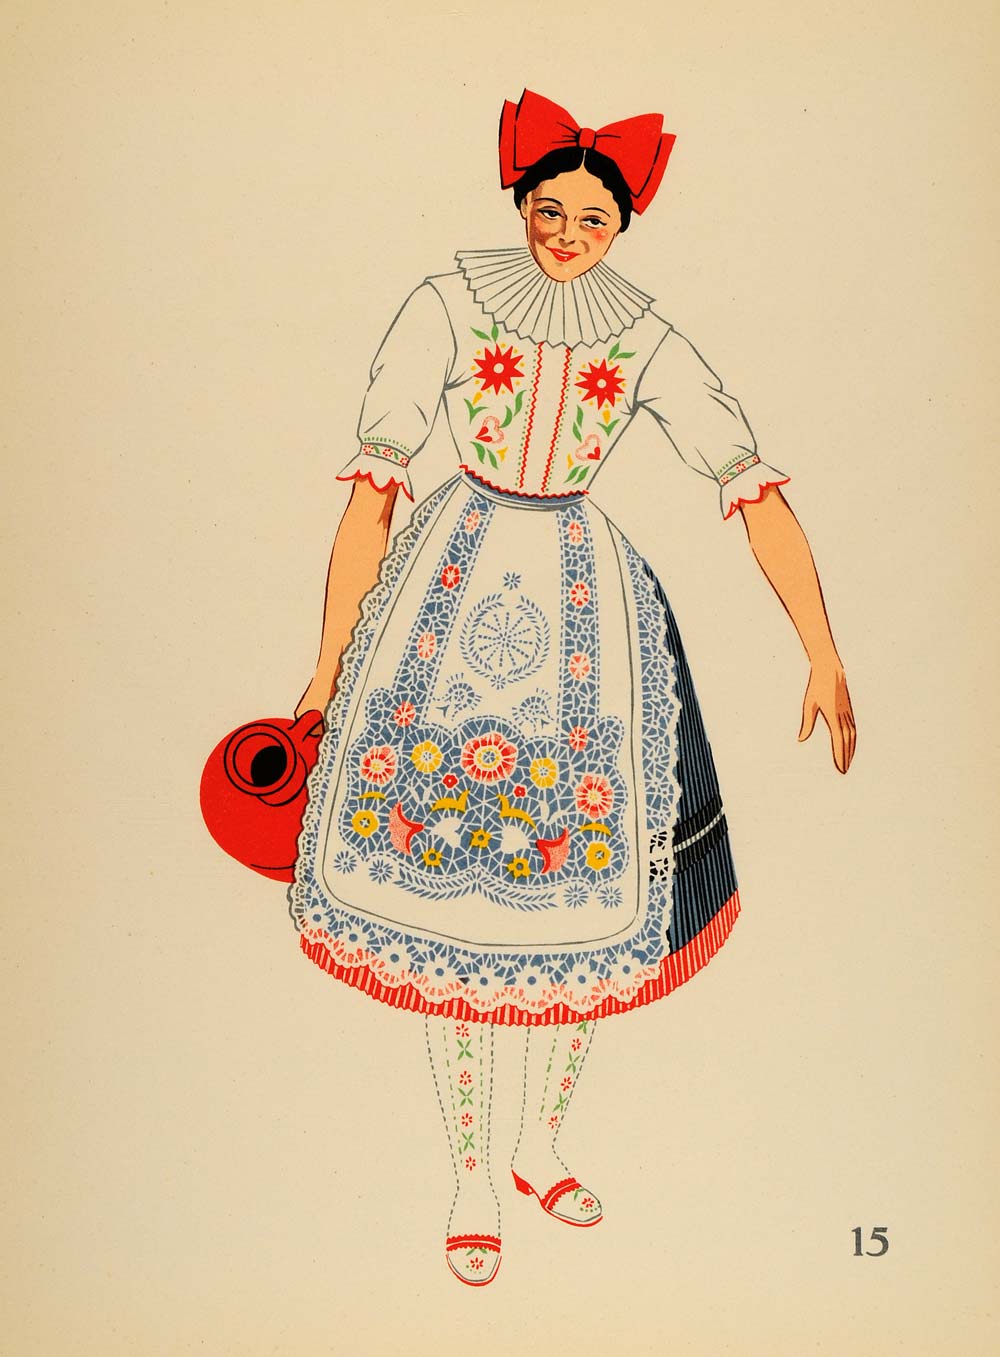 1939 Costume Woman Apron Kalocsa Hungary Lithograph - ORIGINAL COS4